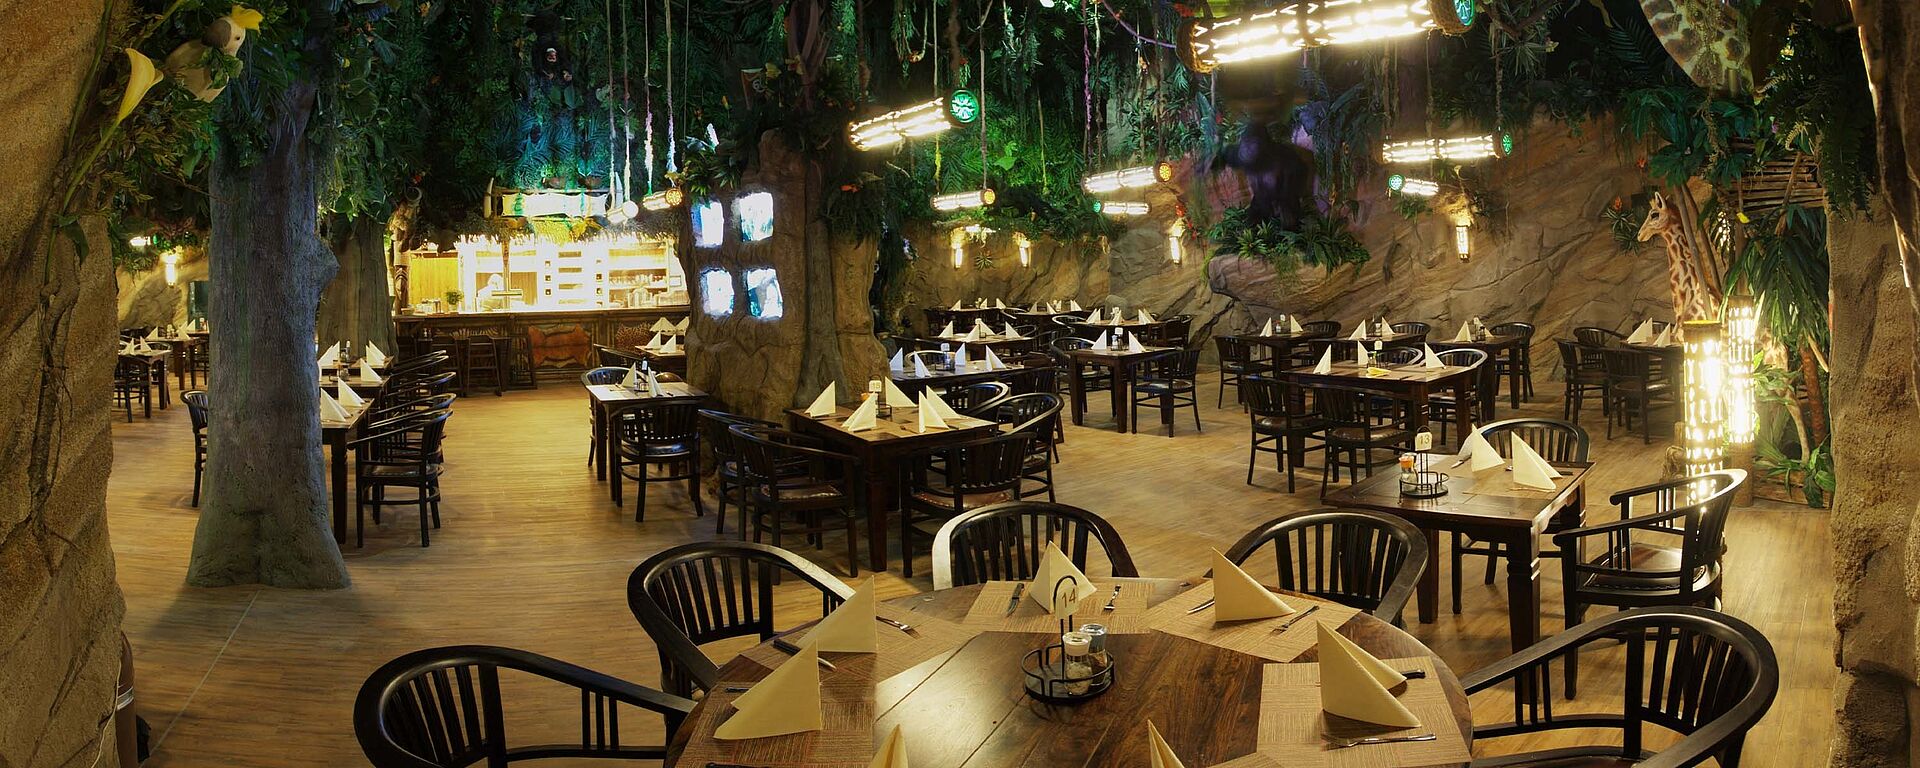 Dschungelrestaurant